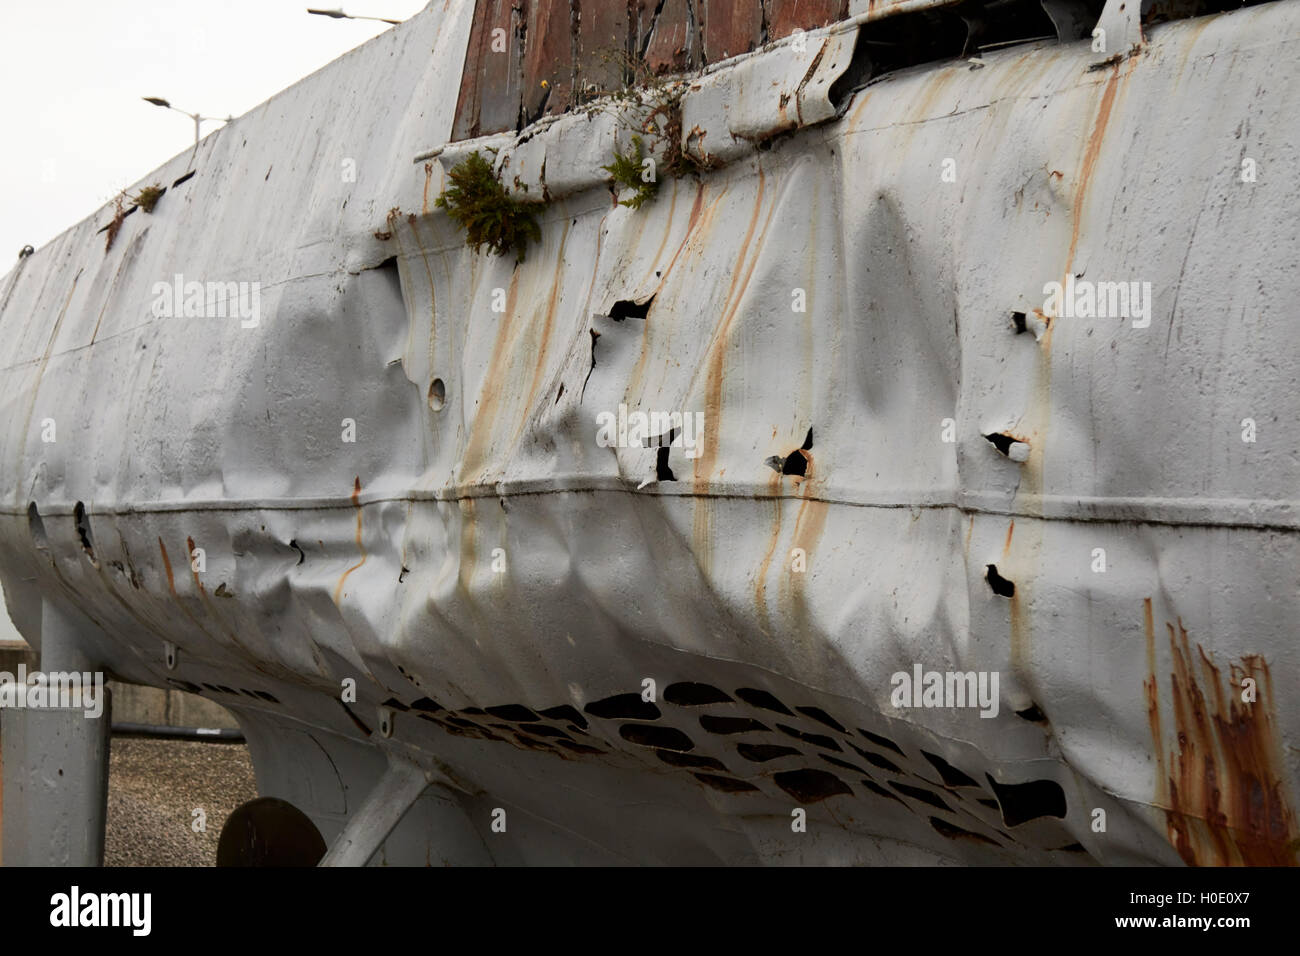 Tiefe Kosten Schaden Sie-534 u-Boot-Museum im u-Boot Geschichte Liverpool Merseyside UK Stockfoto